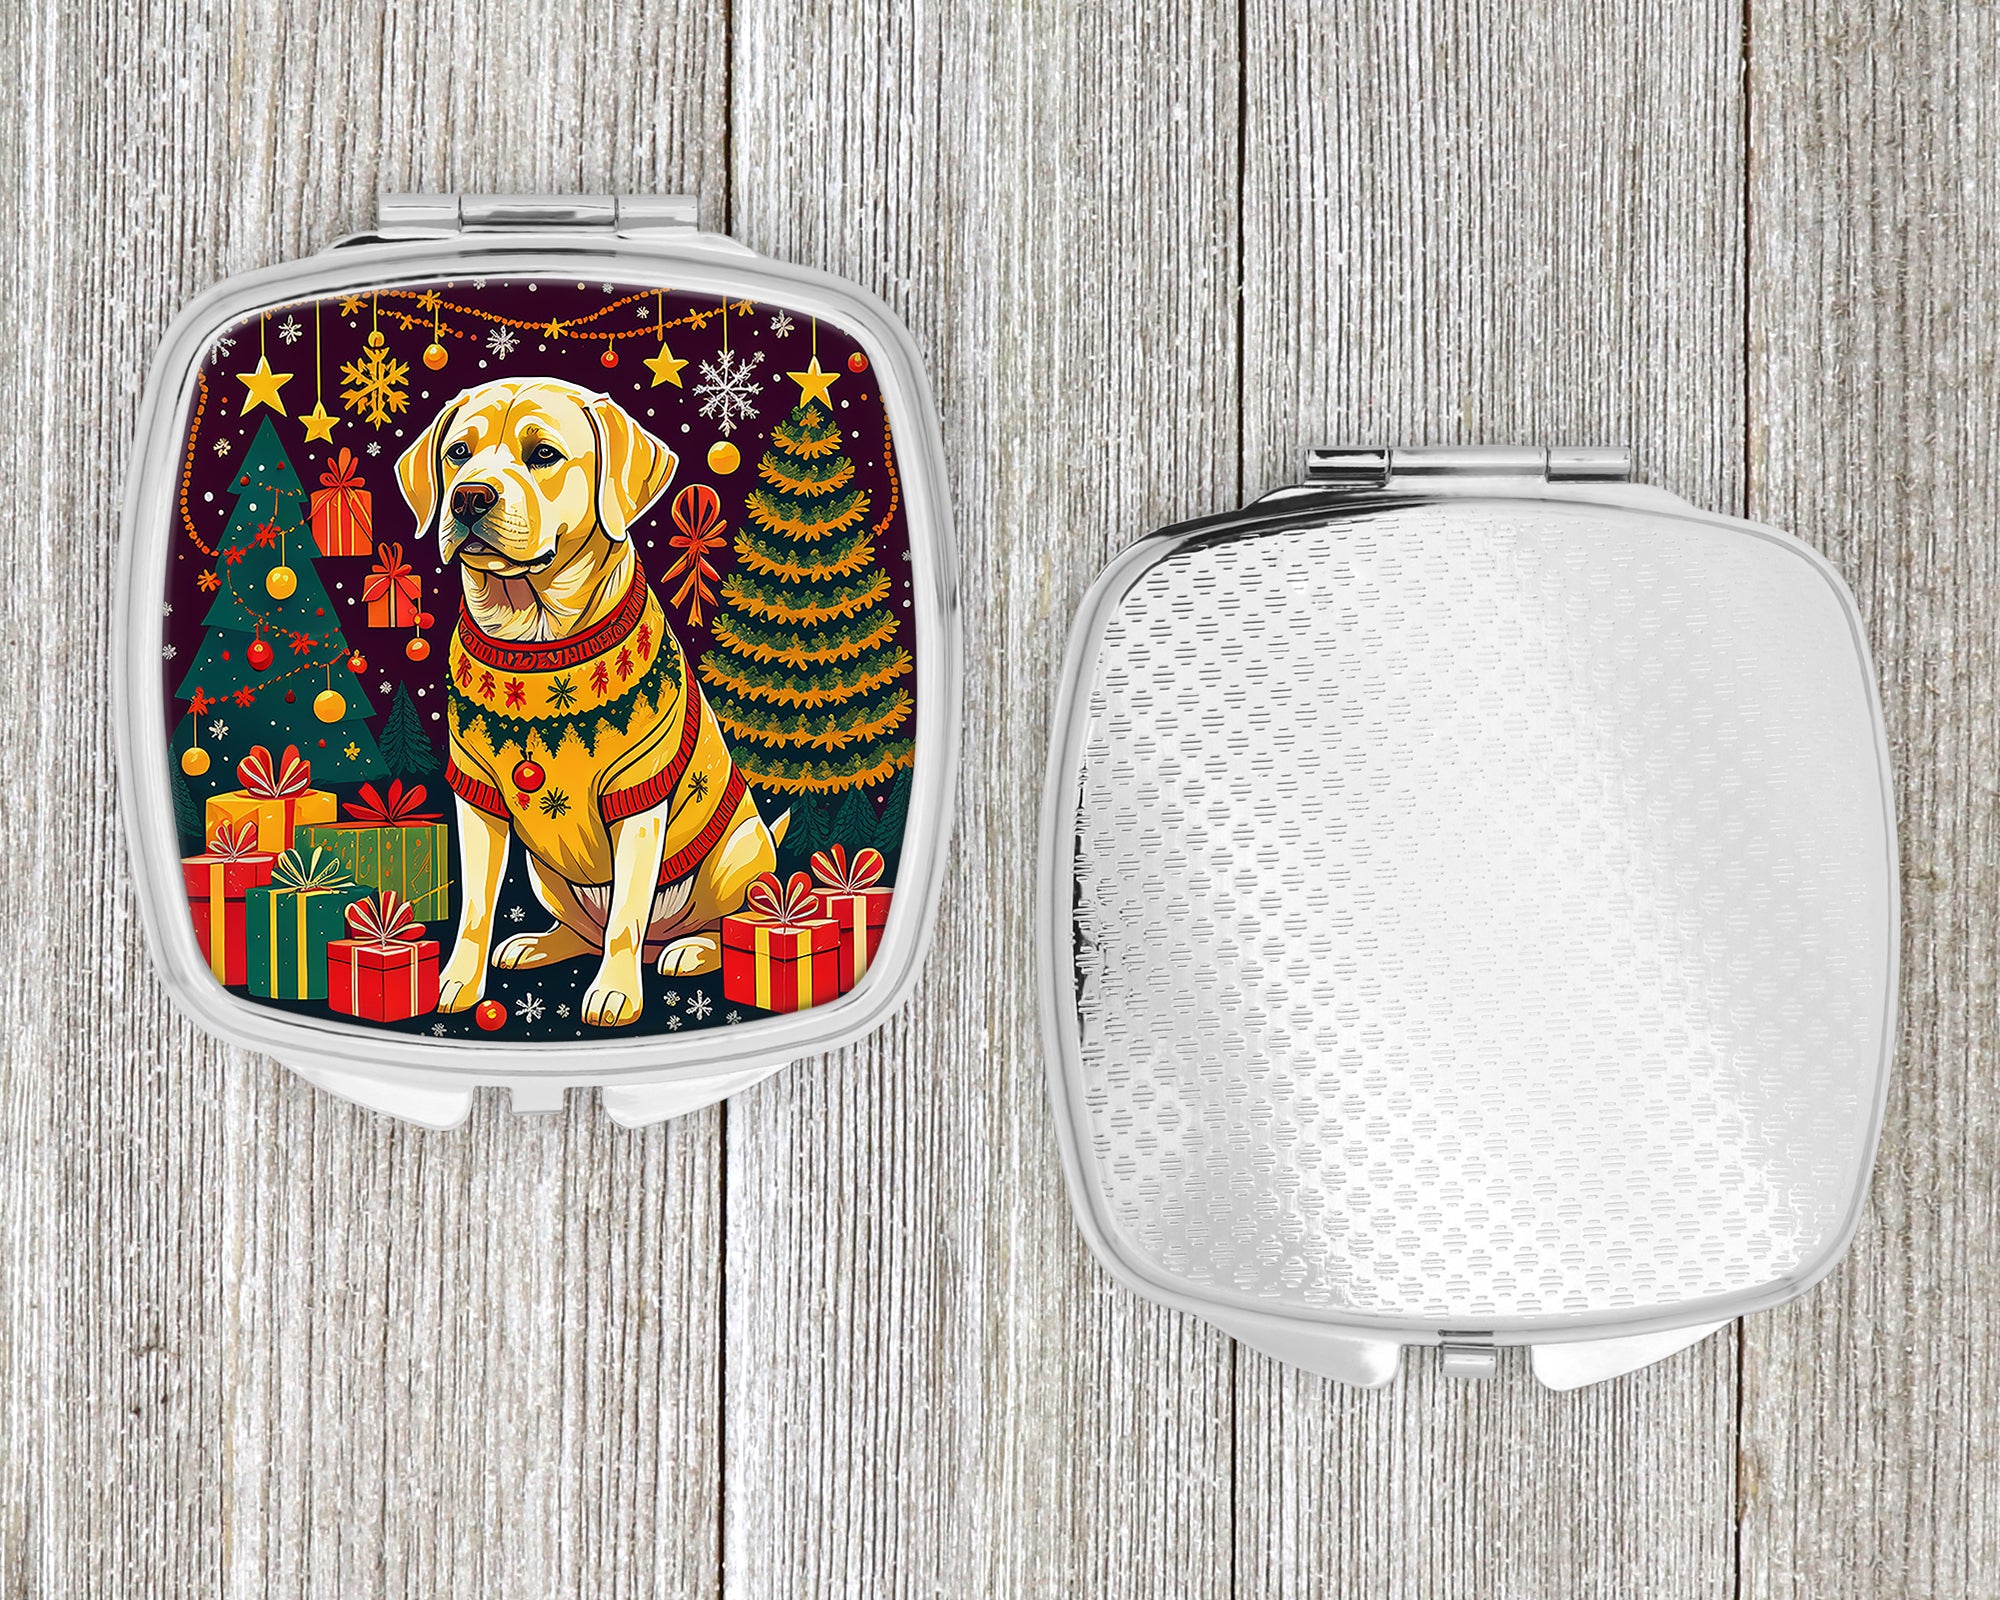 Yellow Labrador Retriever Christmas Compact Mirror